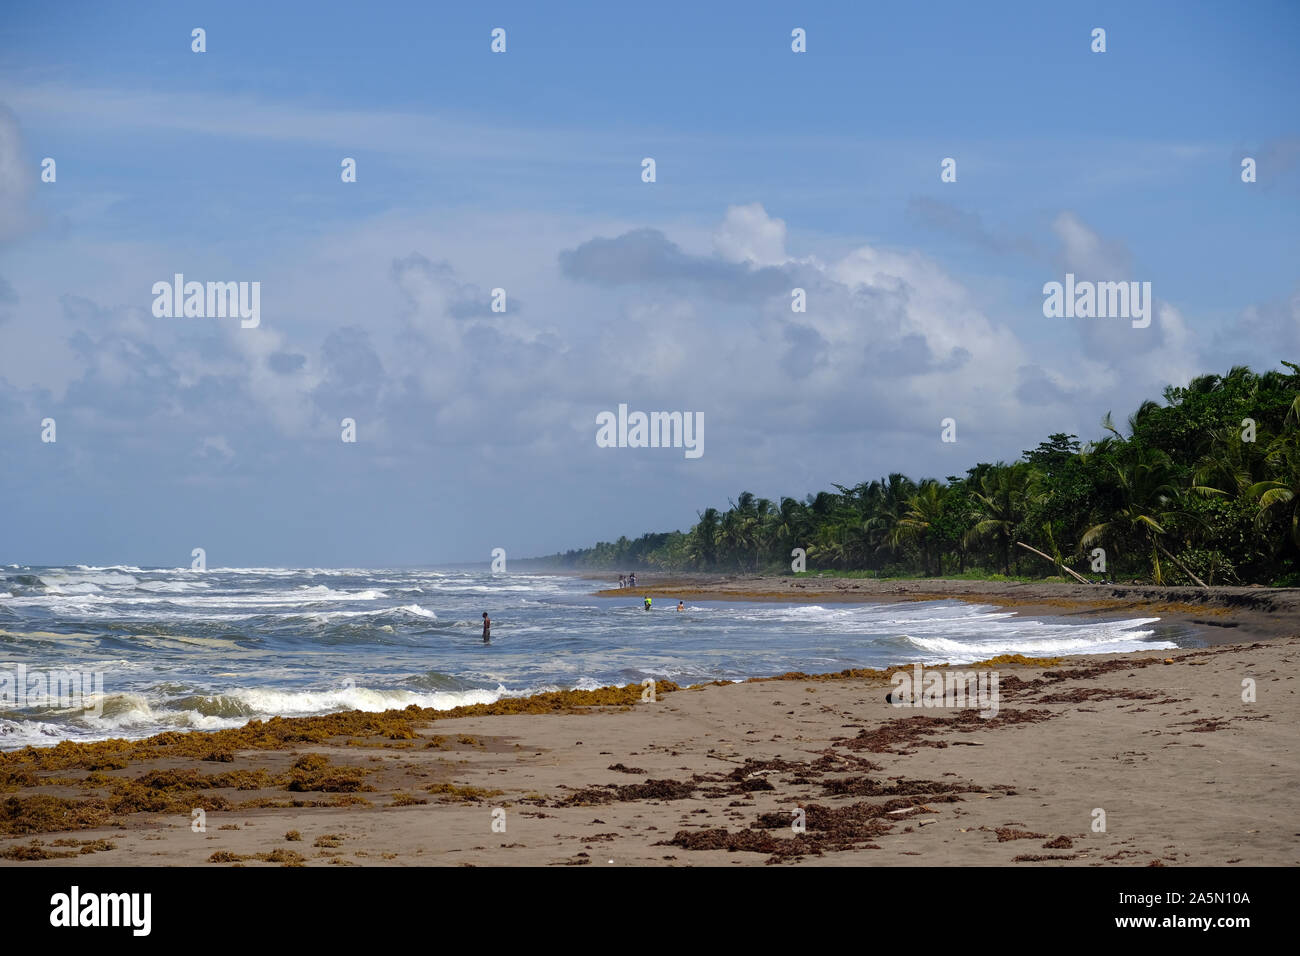 Wonderful Beaches - Costa Rica Tortuguero Beach, wild and stormy beach Stock Photo